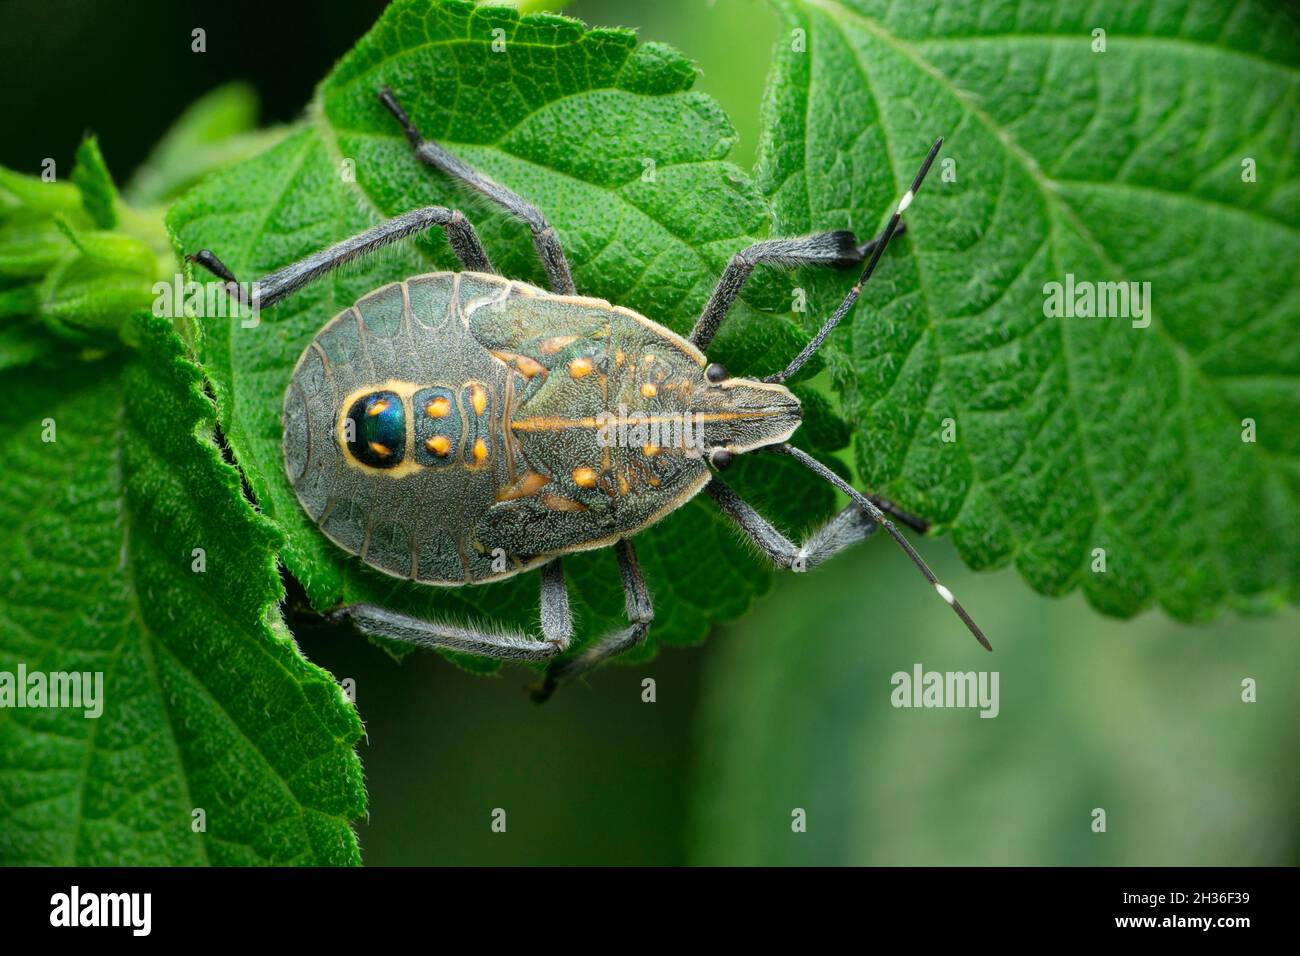 Grey giant stink bug, Satara, Maharashtra, India Stock Photo